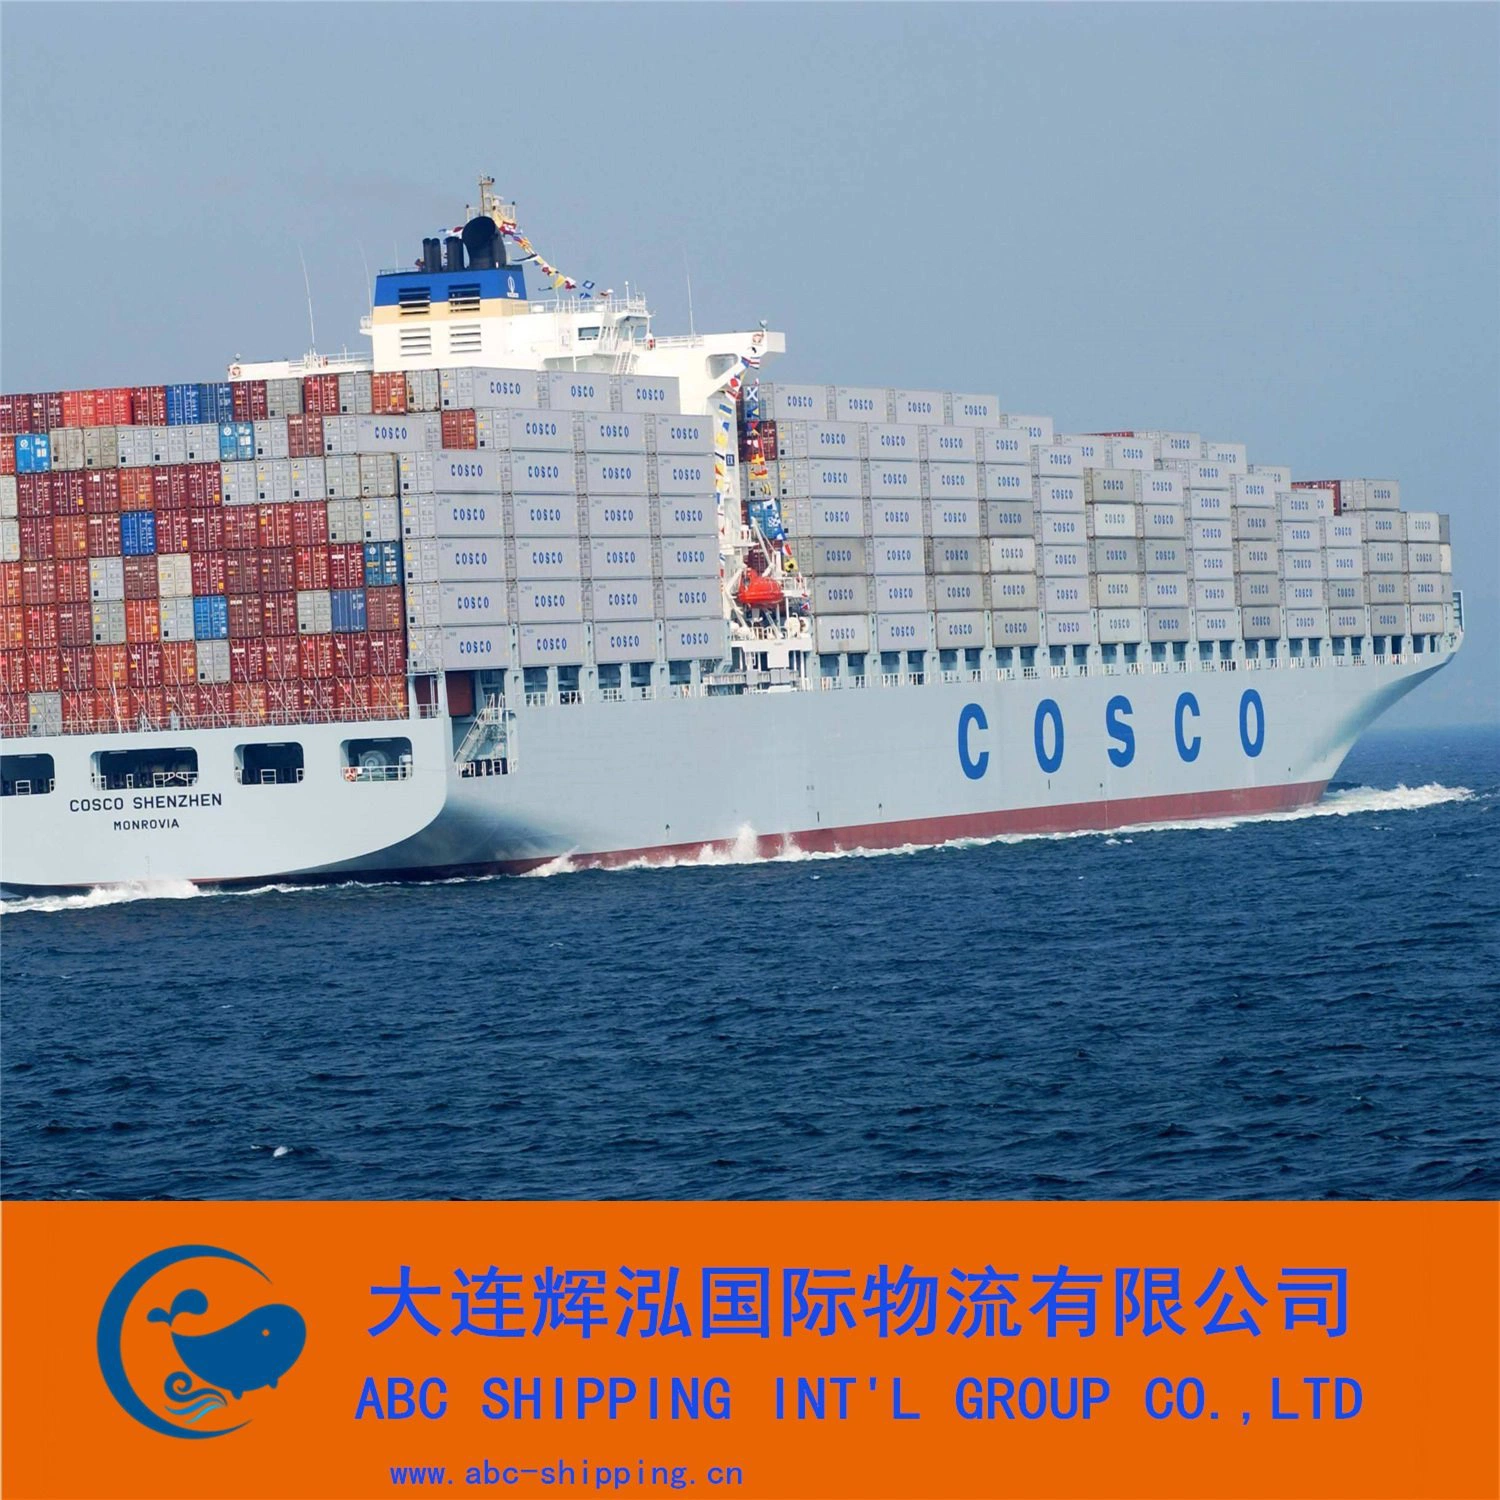 Los Servicios de Logística Internacional se centran en bienes marítimos